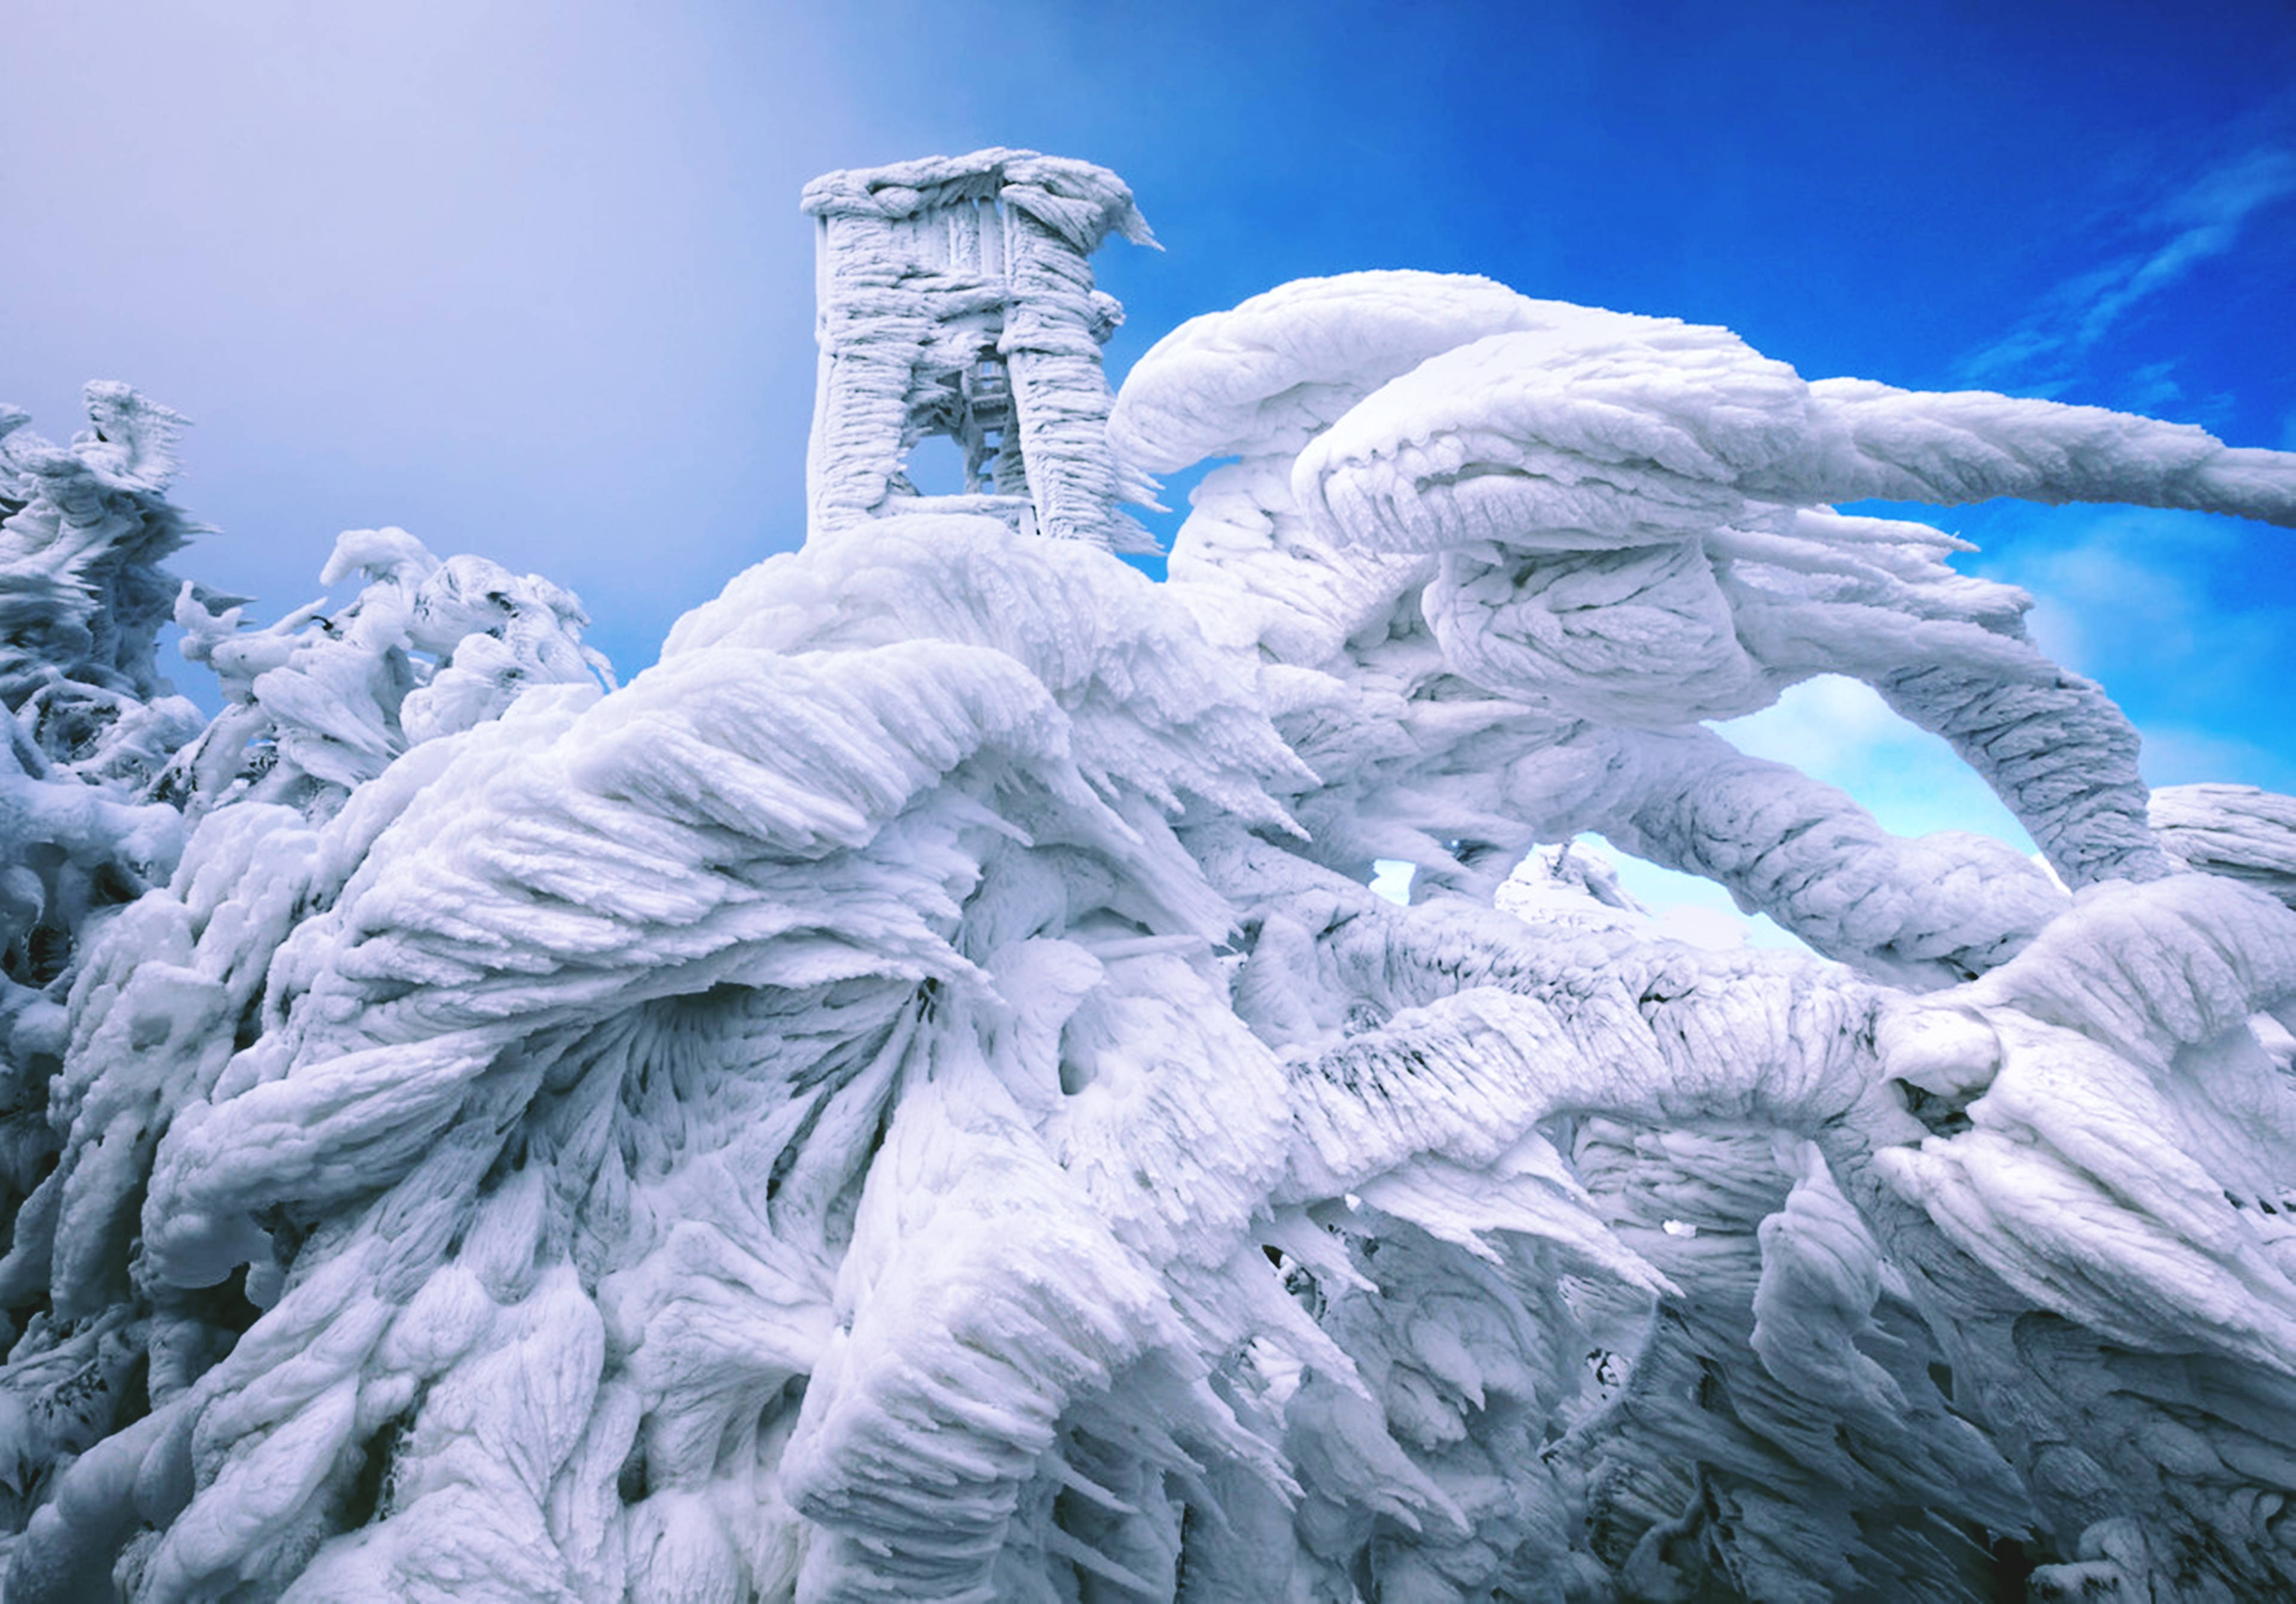 Невероятные имена. Ледяные образования на вершине горы в Словении. Ледяные скульптуры. Необычные фотографии. Шедевры природы.